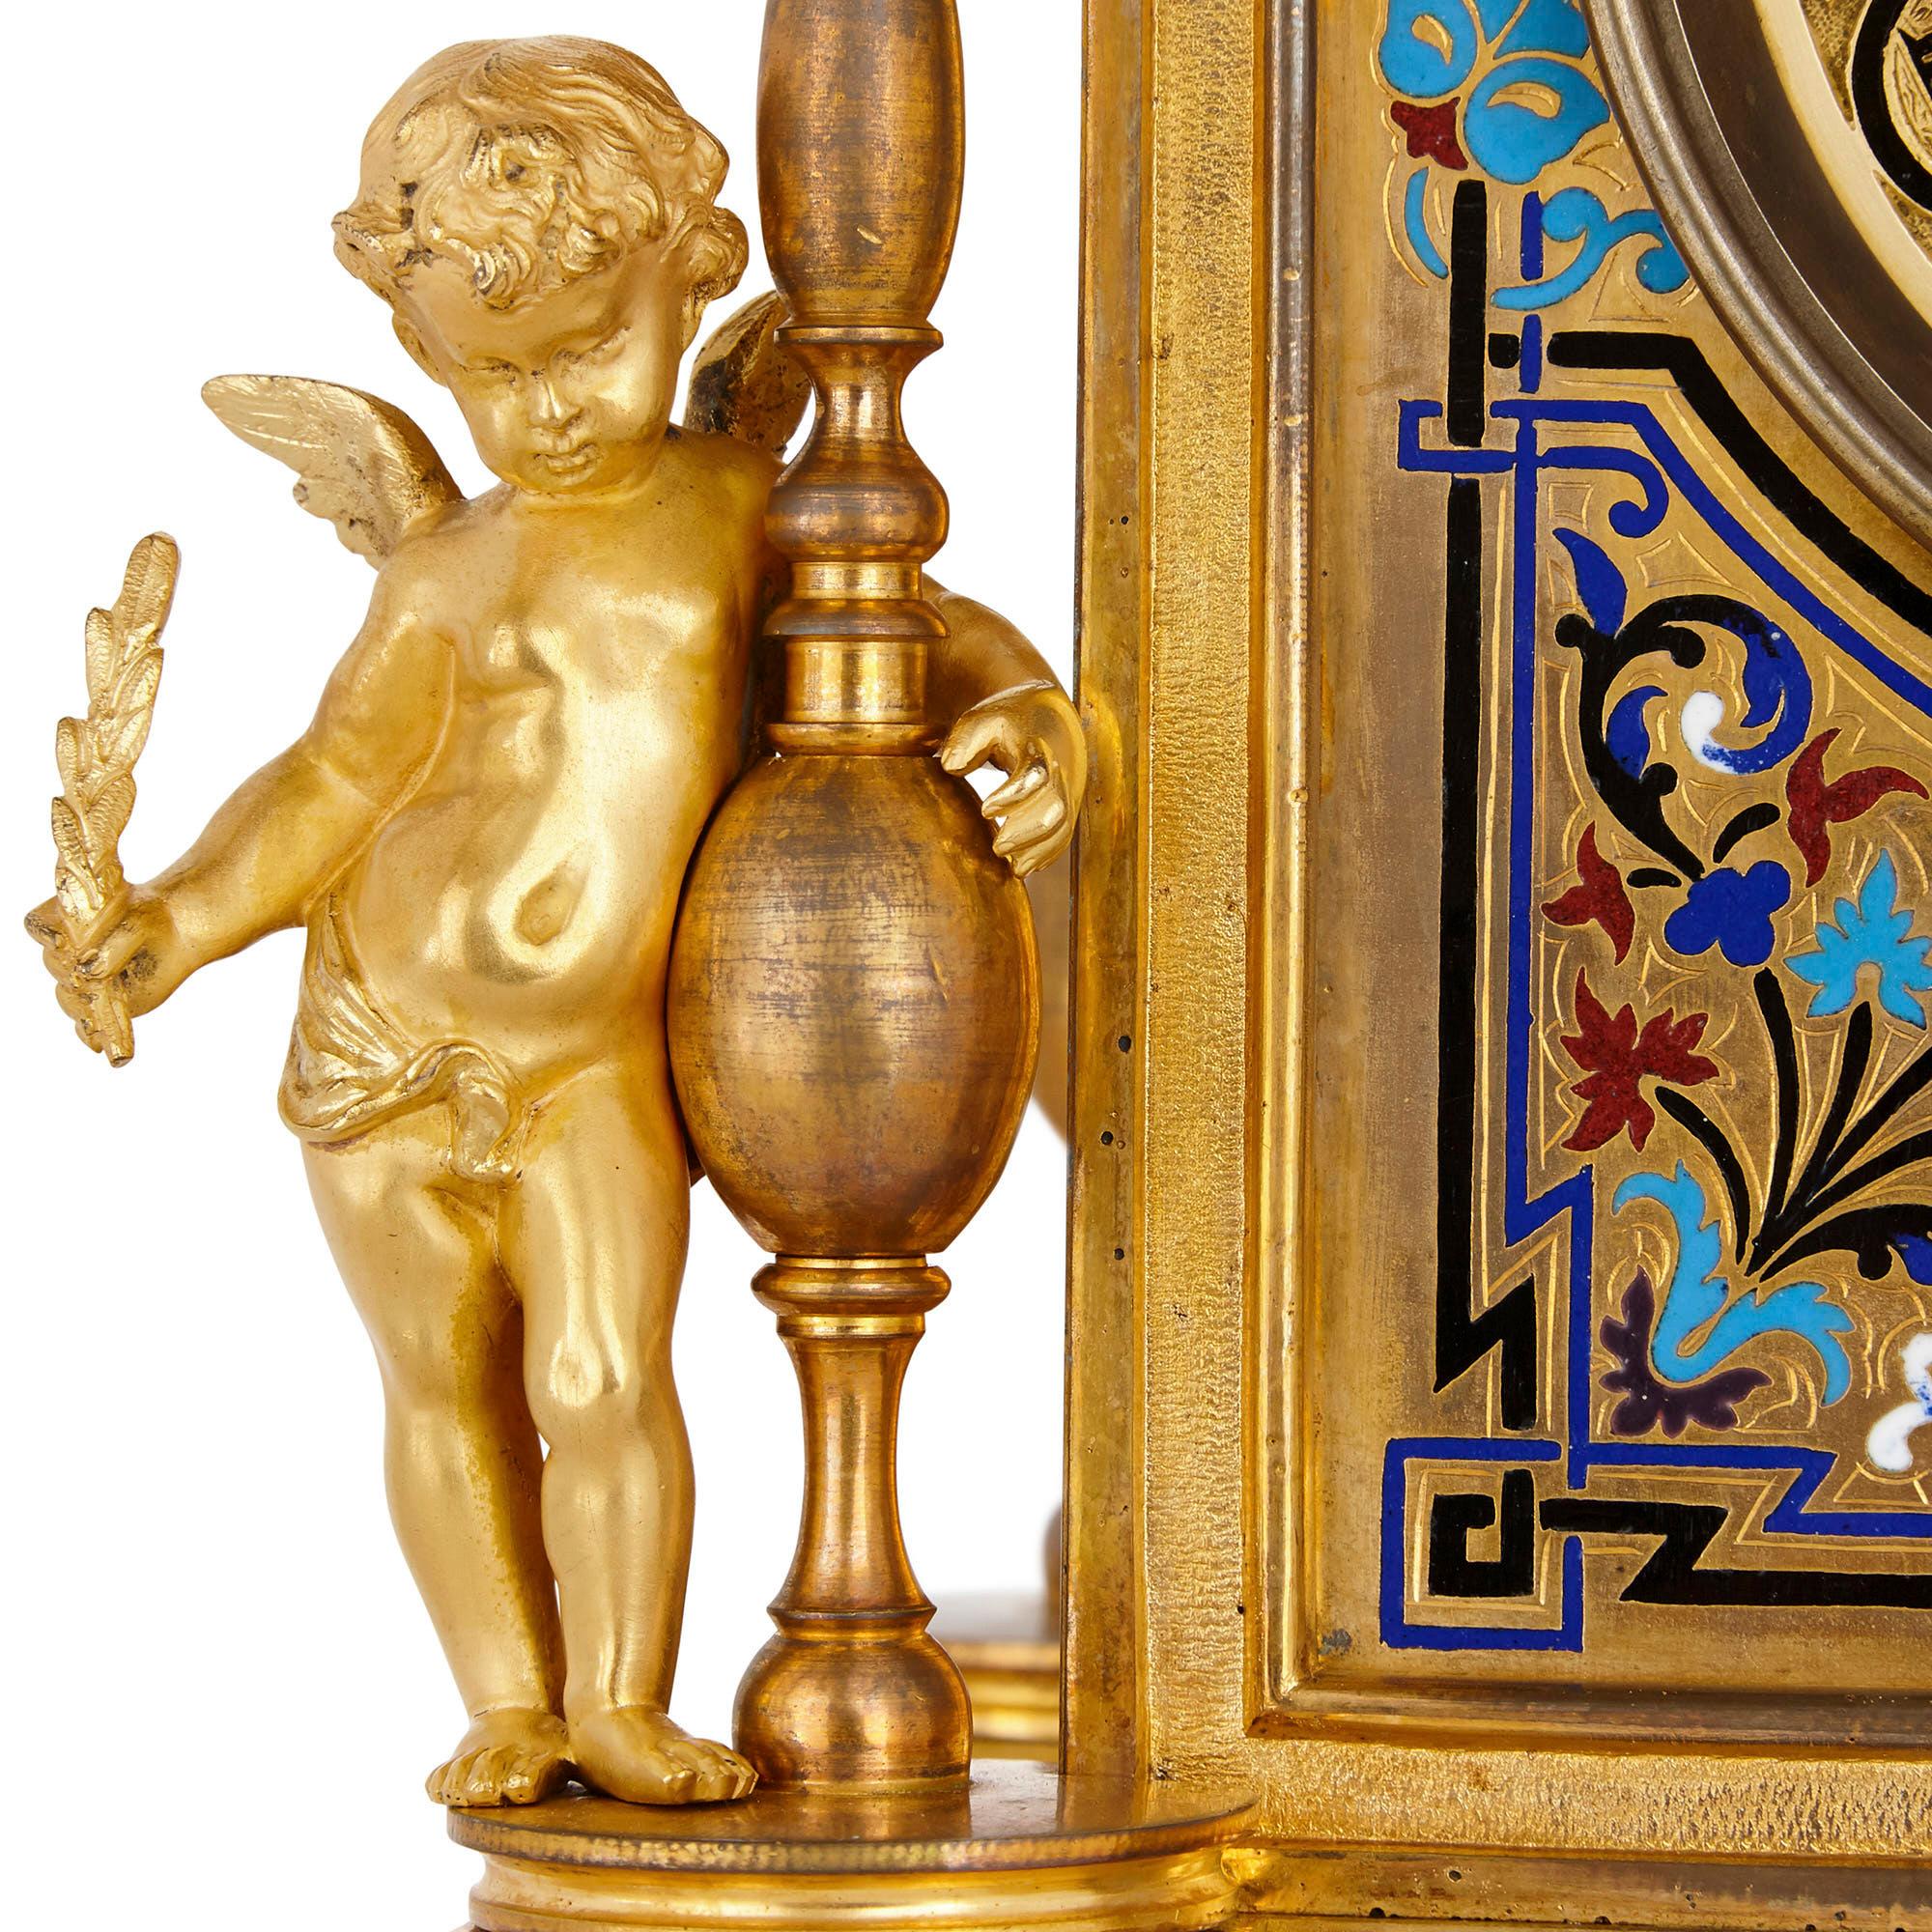 Champlevé Renaissance Revival Enamel and Gilt Bronze Mantel Clock For Sale